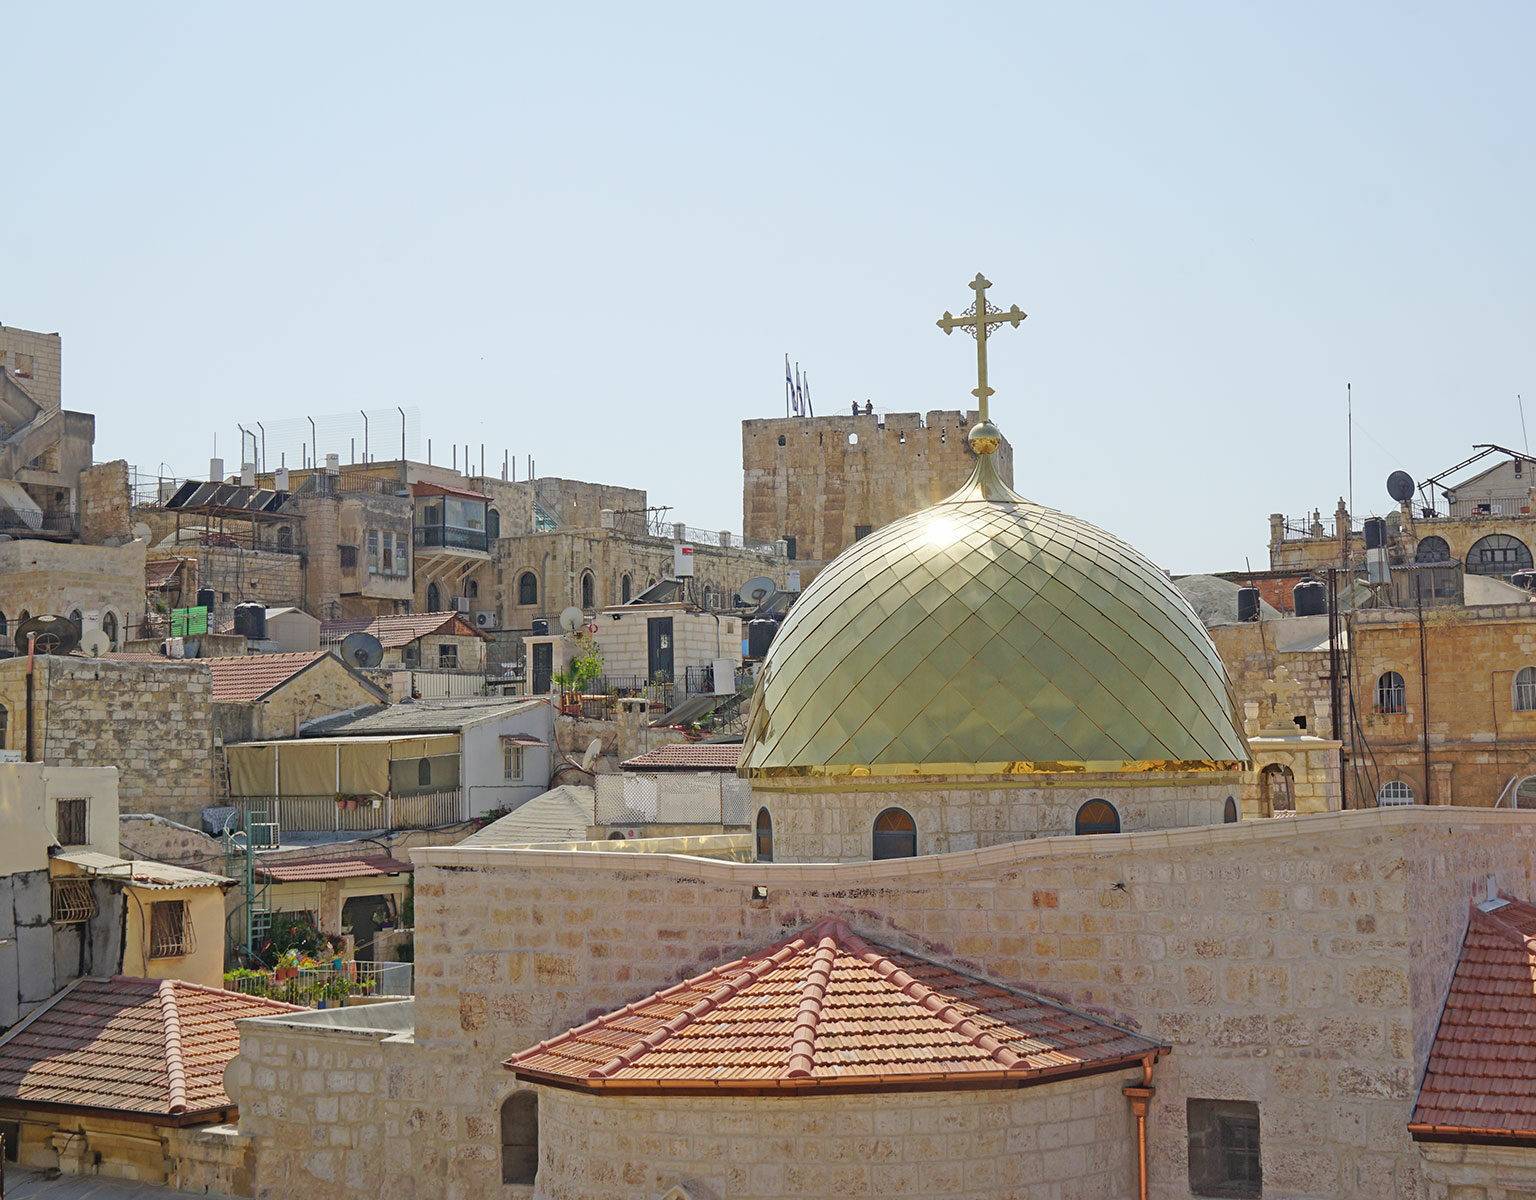 Die Sonne strahlt über den steinernen Gemäuer und einer goldenen Kuppel einer katholischen Kirche in Jerusalem, Israel.